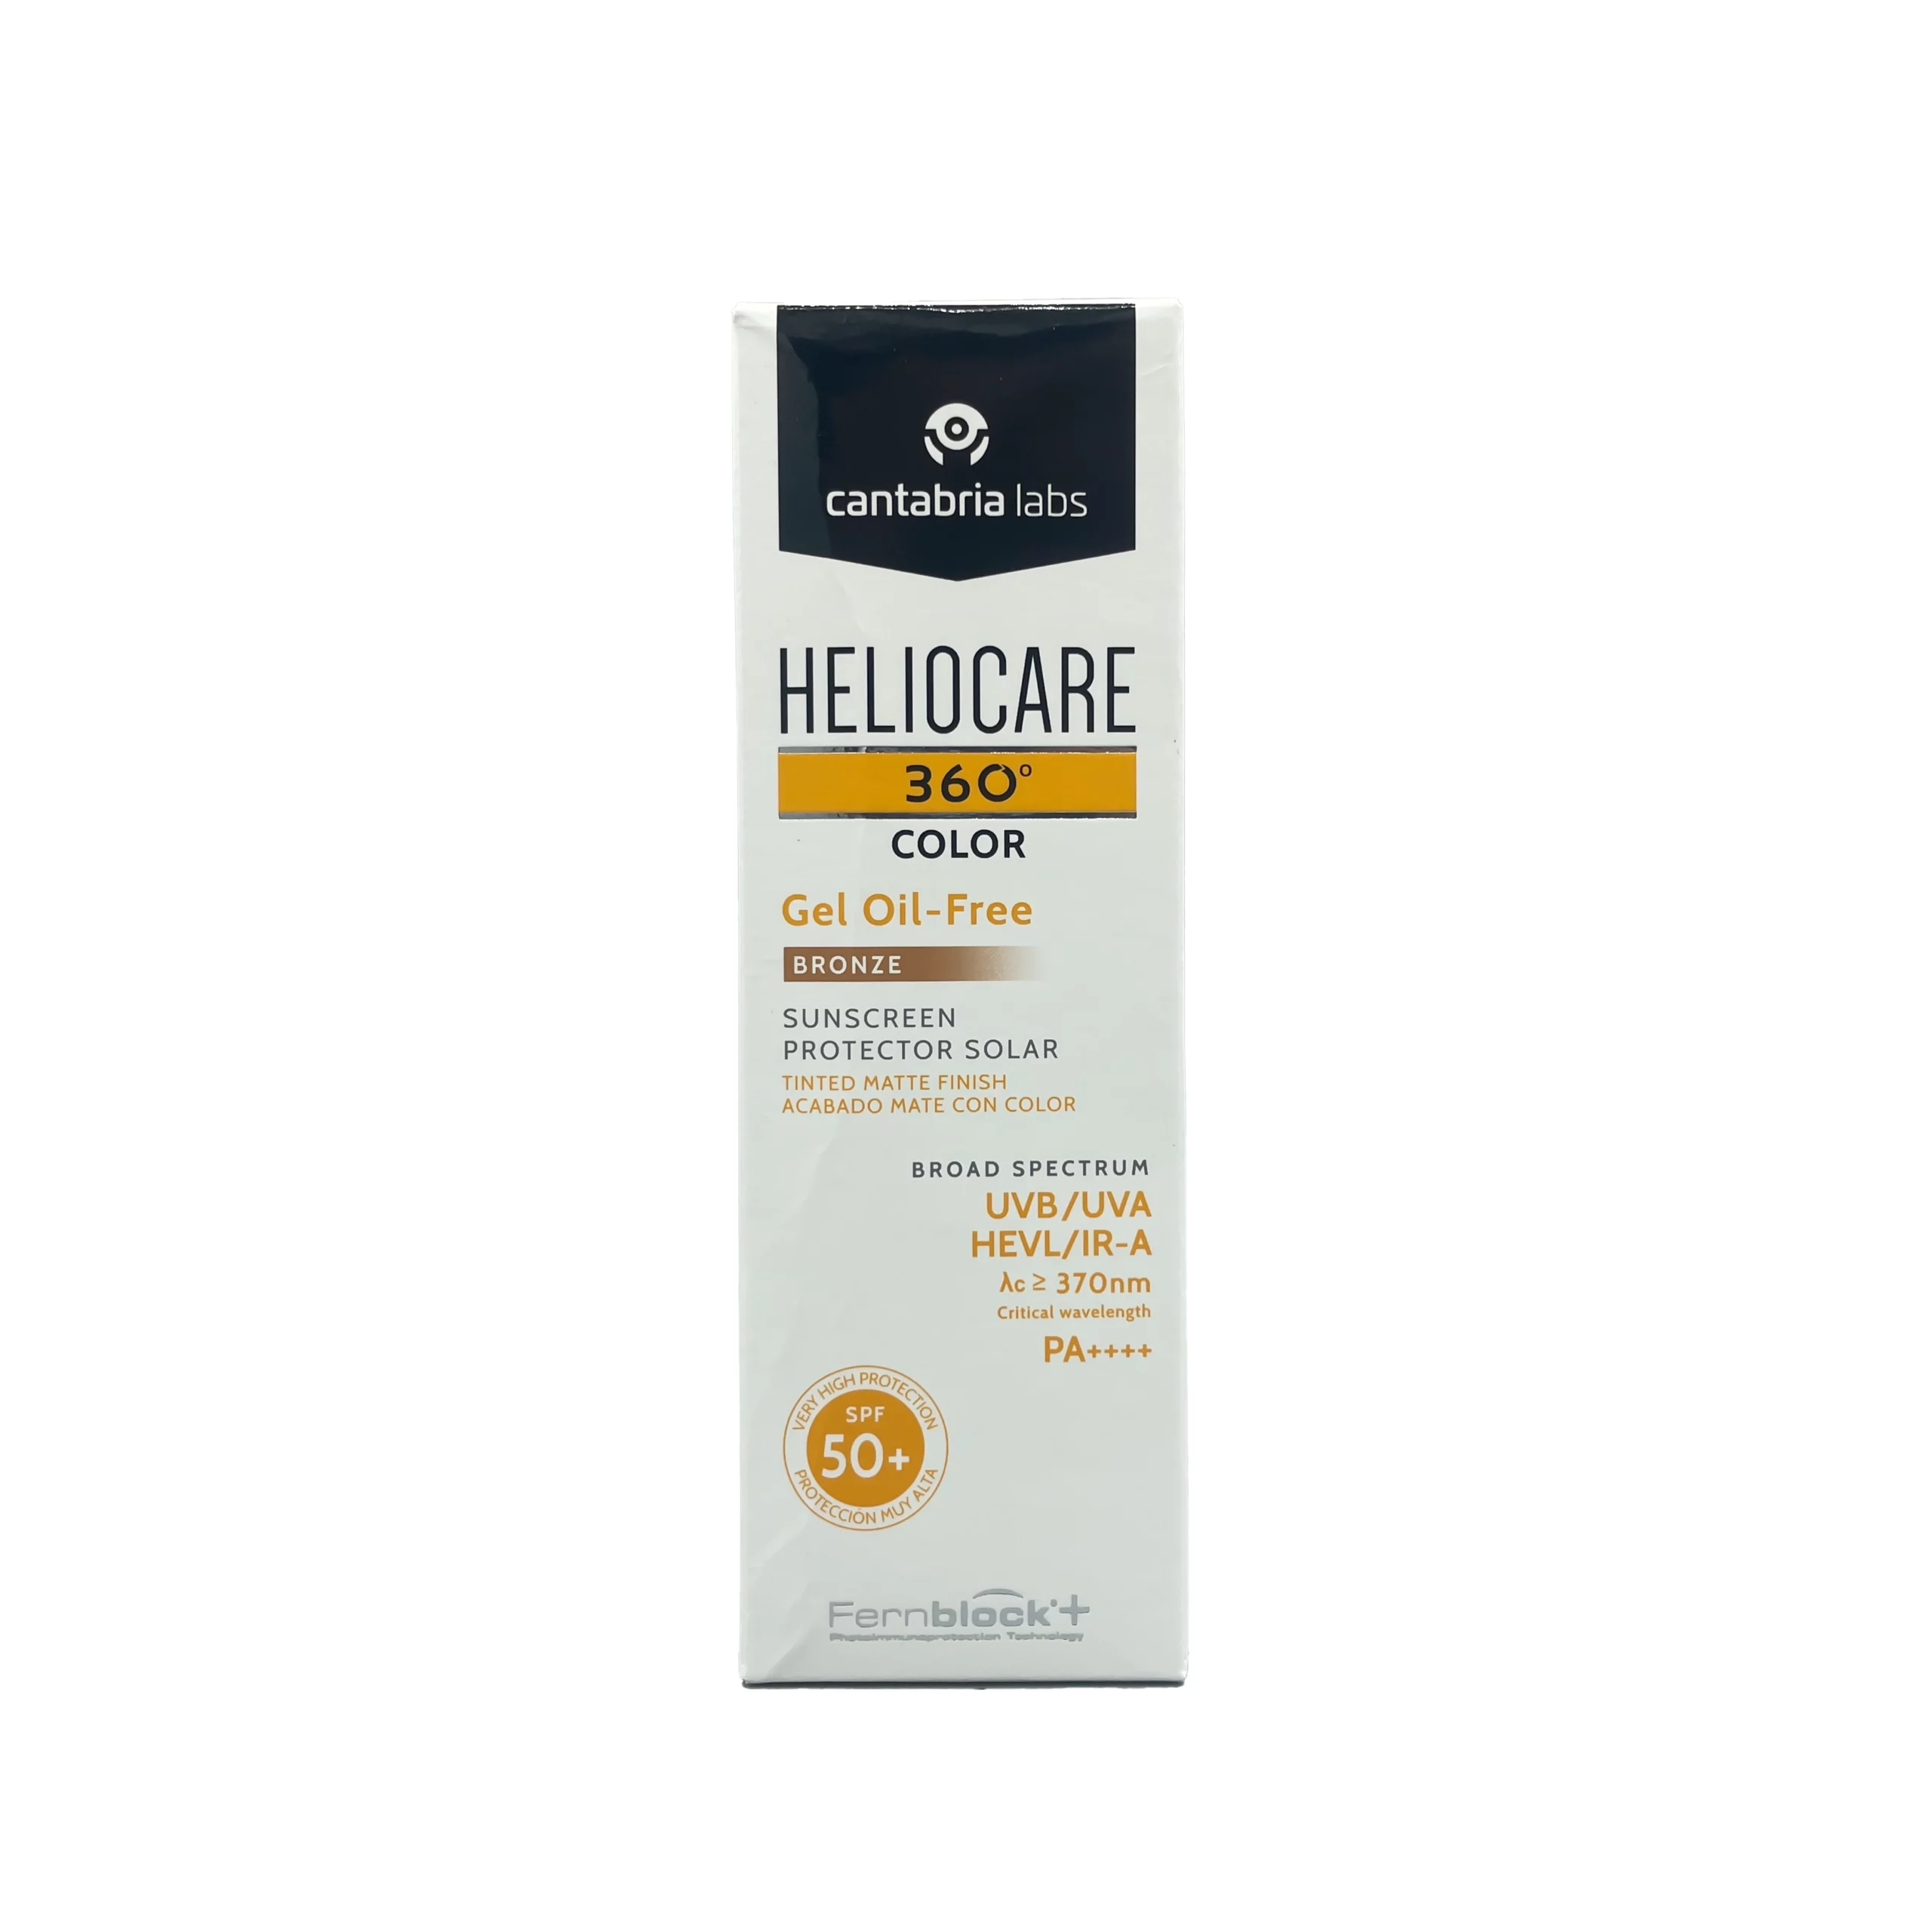 Heliocare 360 Color Gel Oil Free (Bronze) SPF50+ (50ml)